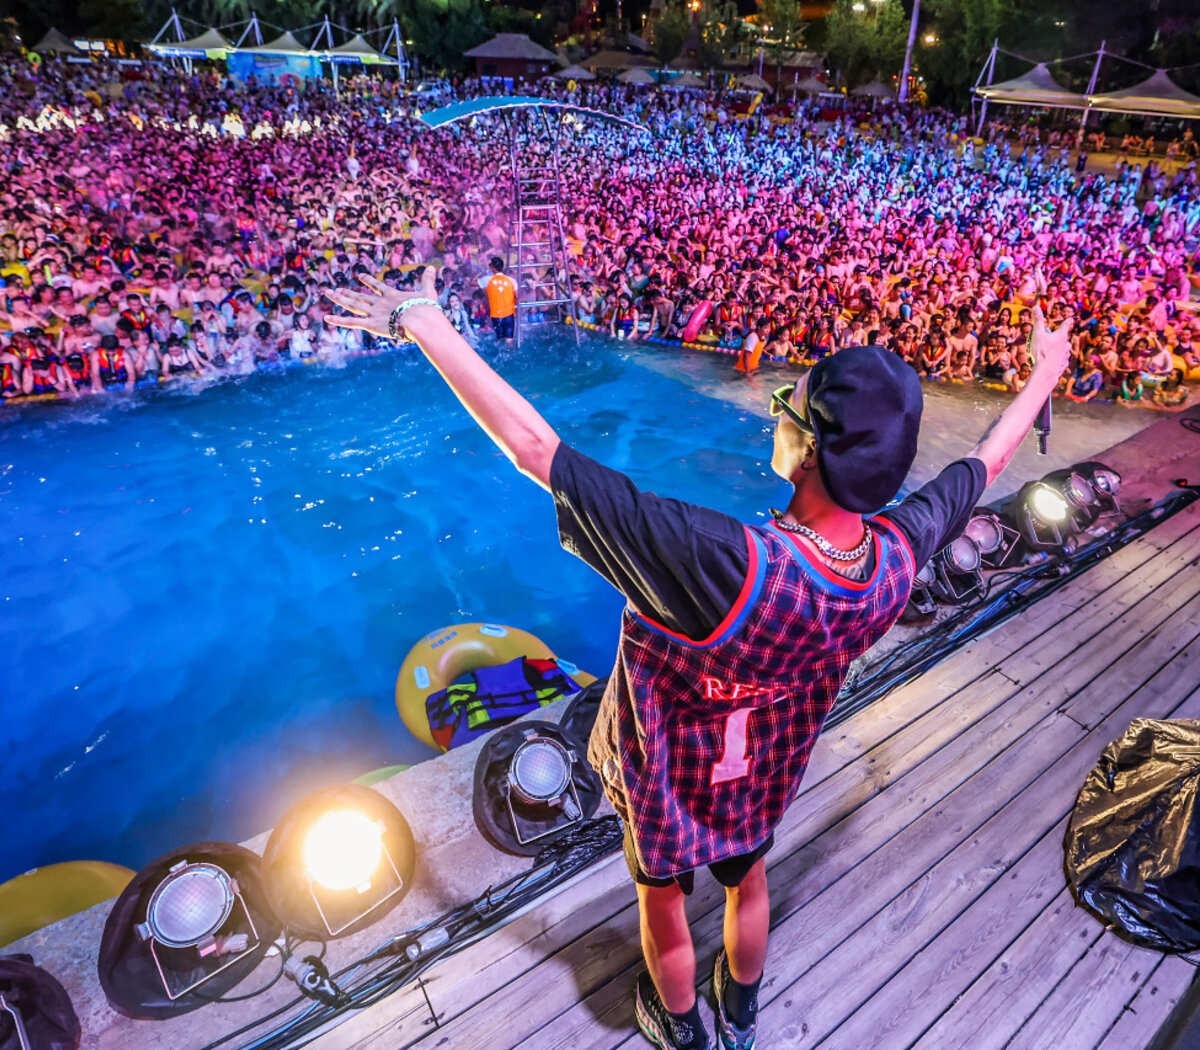 Multitudinaria fiesta electrónica en un parque acuático de Wuhan | Indignación en las redes sociales por el festival en la ciudad donde se registraron los primeros casos Covid-19 | Página|12